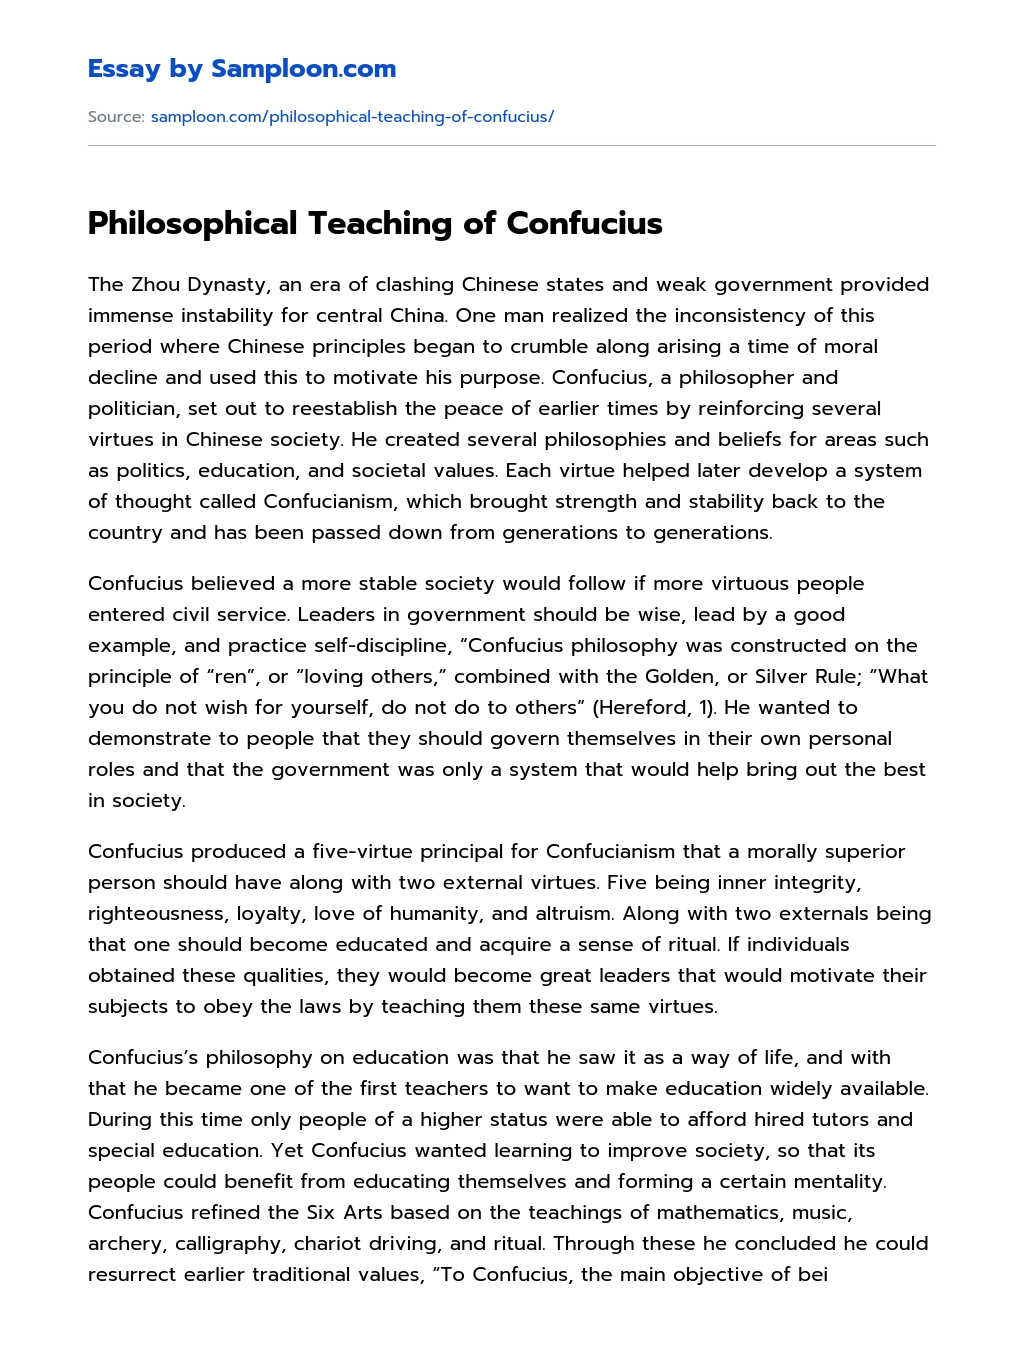 Philosophical Teaching of Confucius essay